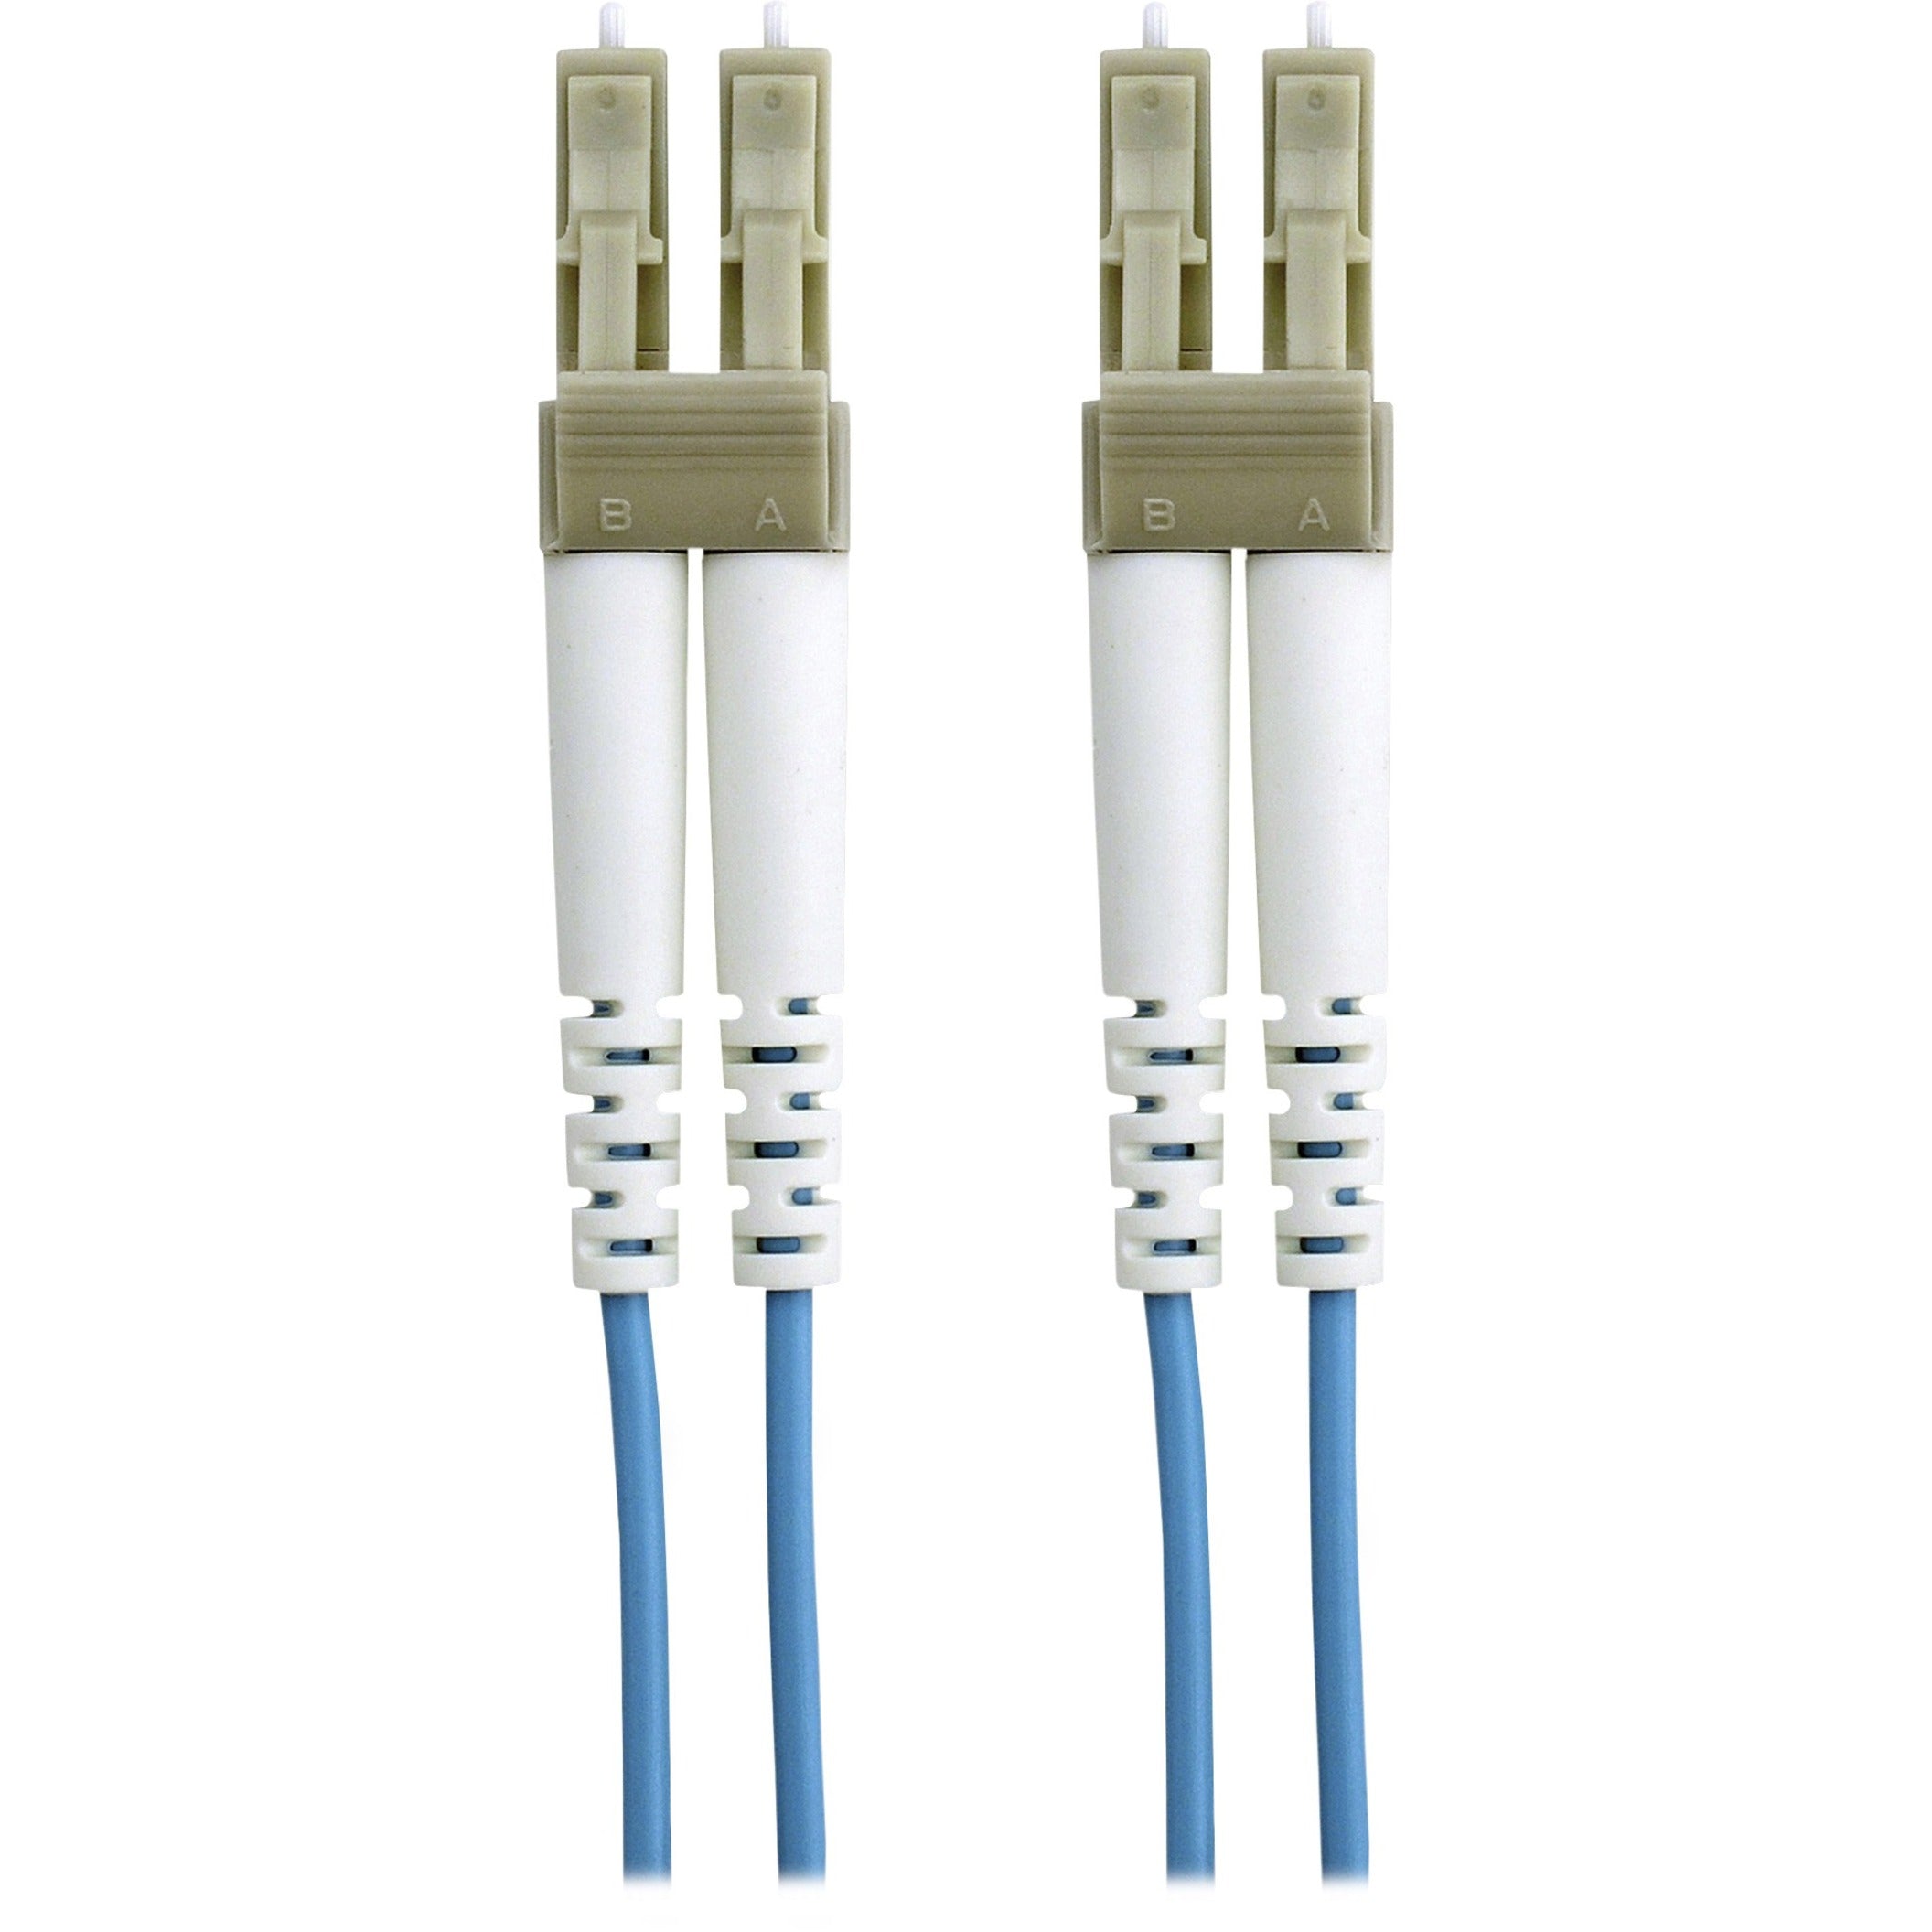 产品名称：百林 F2F402LL-01M-G 10GB 蓝色光纤电缆，3.28英尺，多模式，跳线电缆 品牌：百林